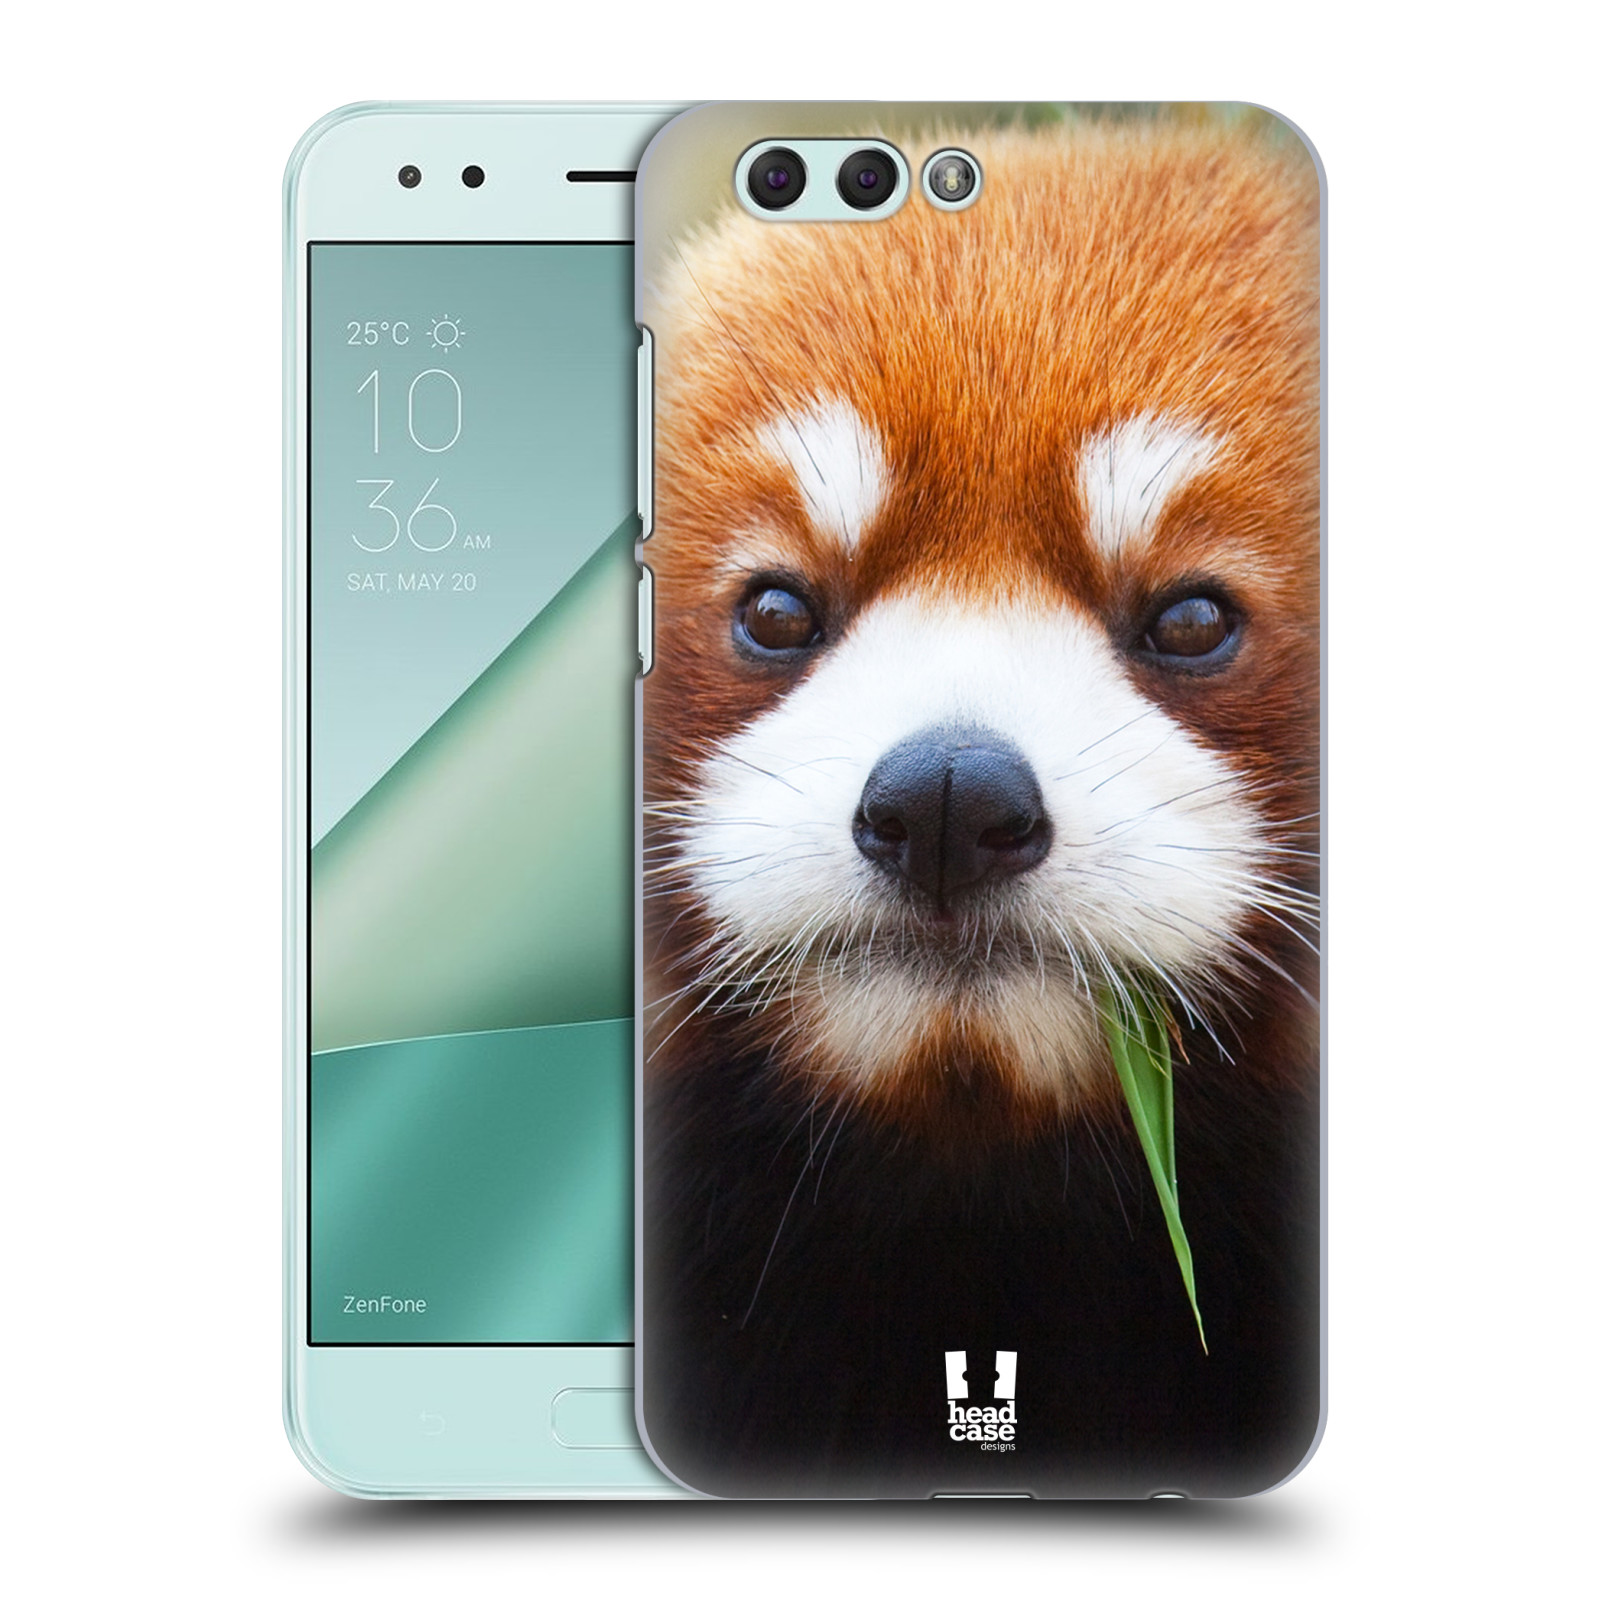 HEAD CASE plastový obal na mobil Asus Zenfone 4 ZE554KL vzor Divočina, Divoký život a zvířata foto PANDA HNĚDÁ